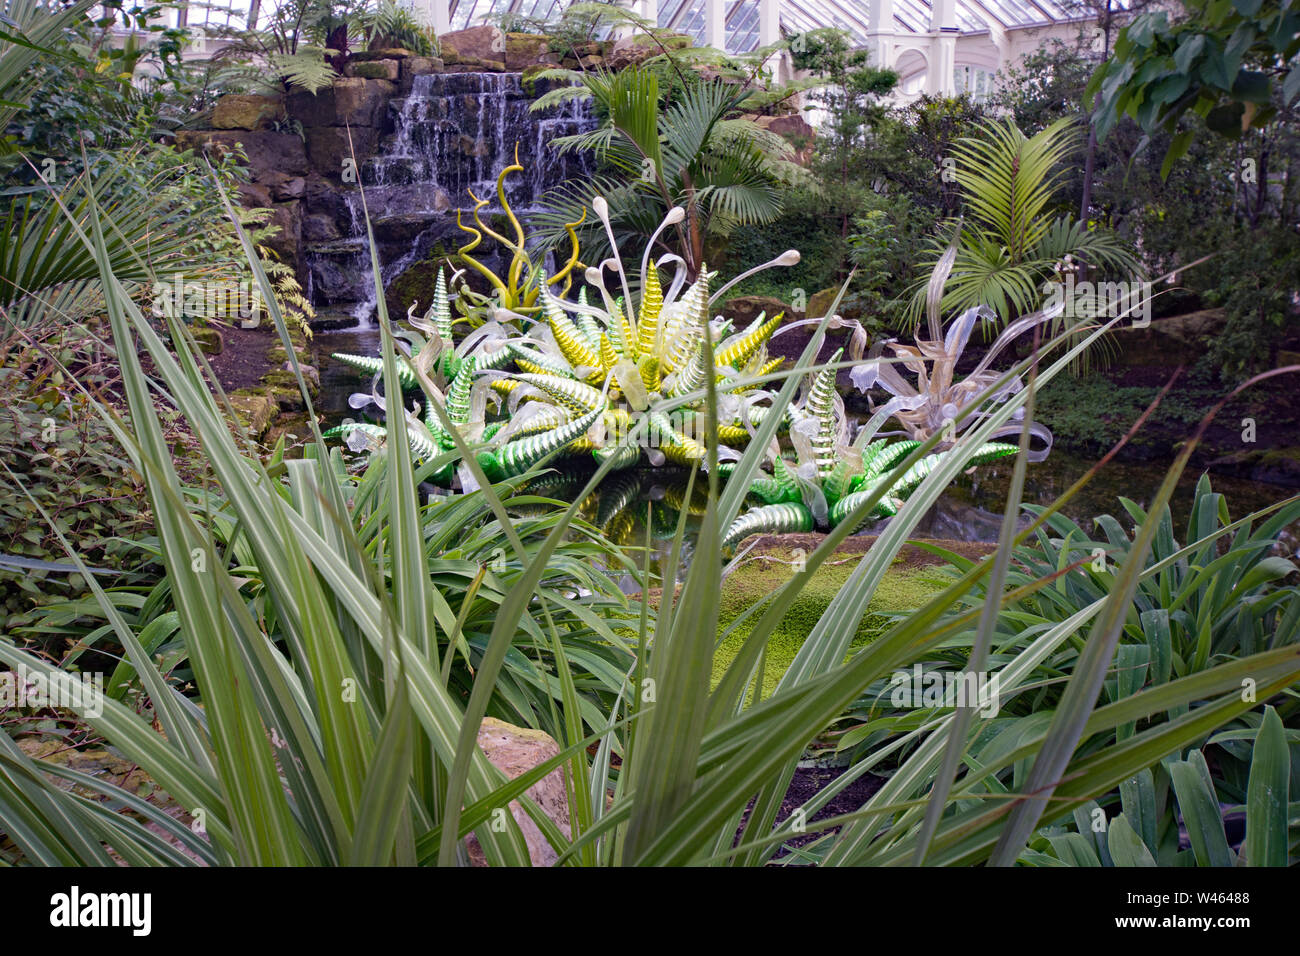 Die Royal Botanic Gardens in Kew, London wachsen mehr Arten in ihren 132 Hektar als jede andere Gärten der Welt. Stockfoto